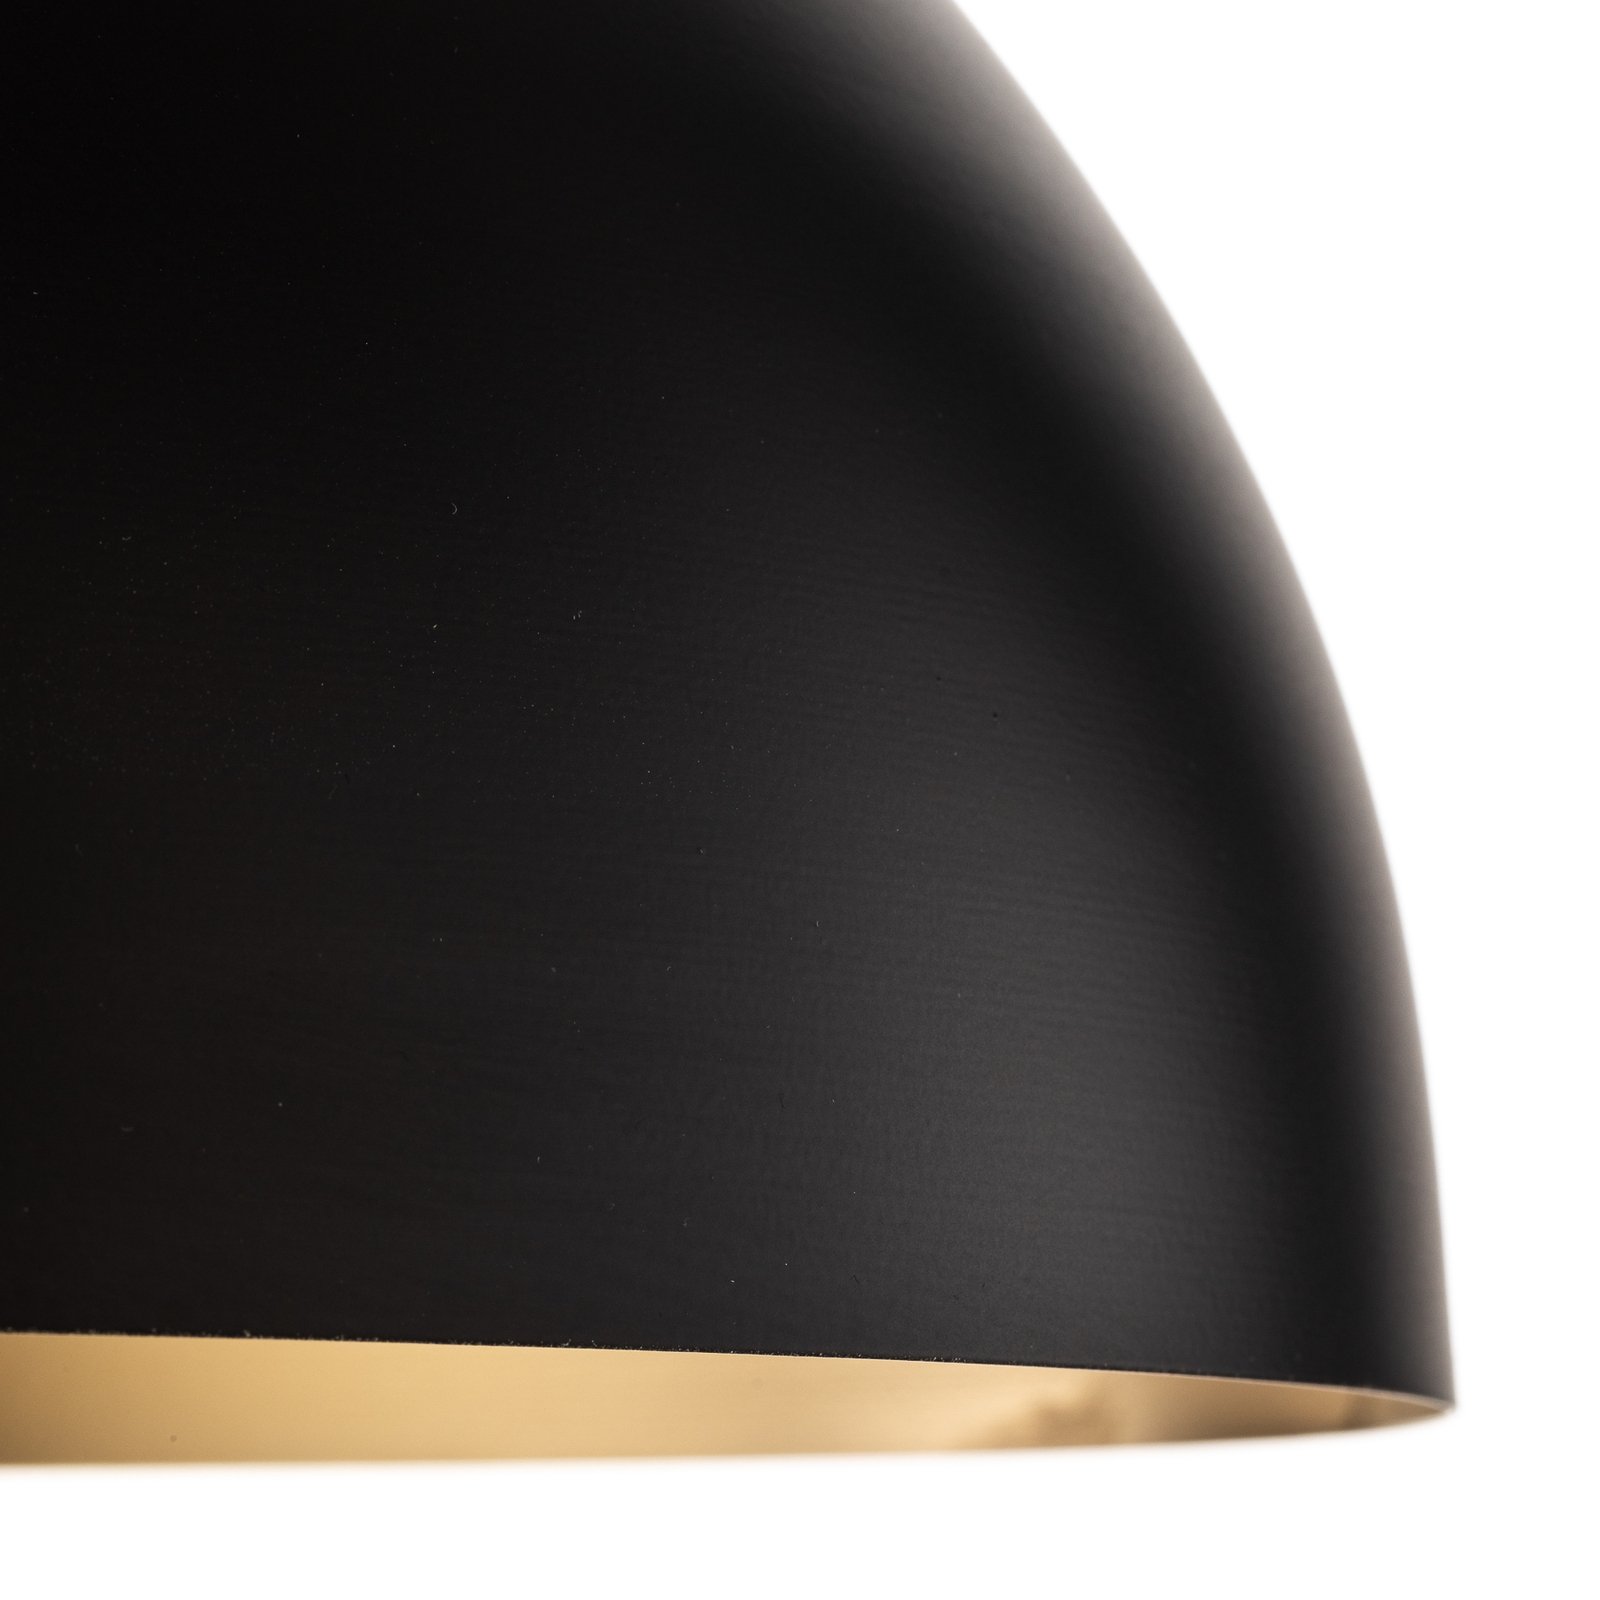 Hanglamp Beta in zwart-goud